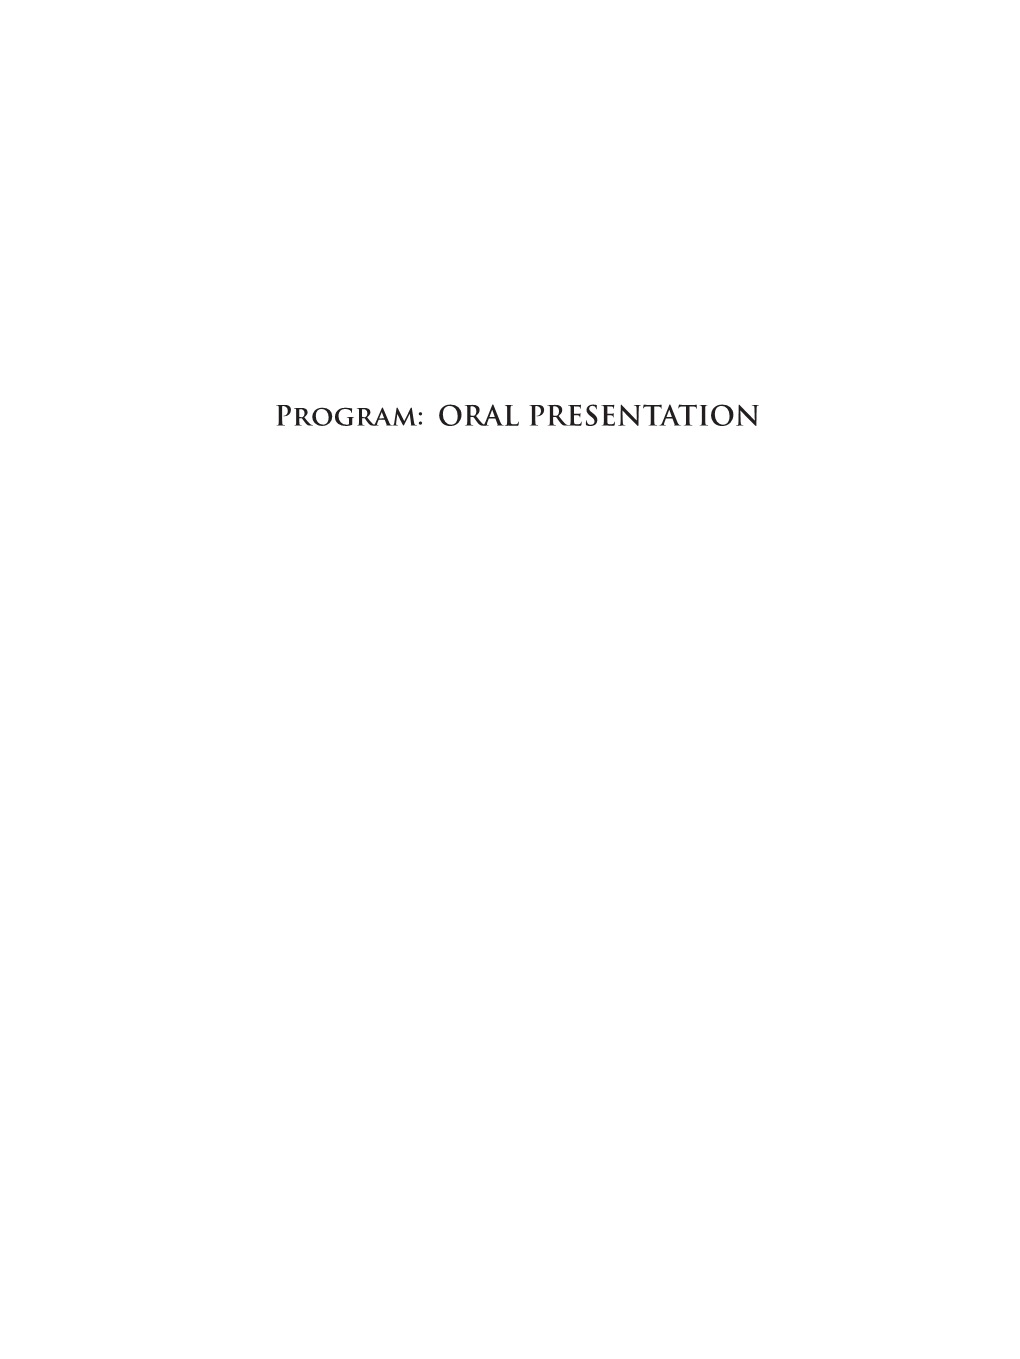 Program: ORAL PRESENTATION ● Day 1 2017 / 03 / 16 (Thu) 9:30–12:30